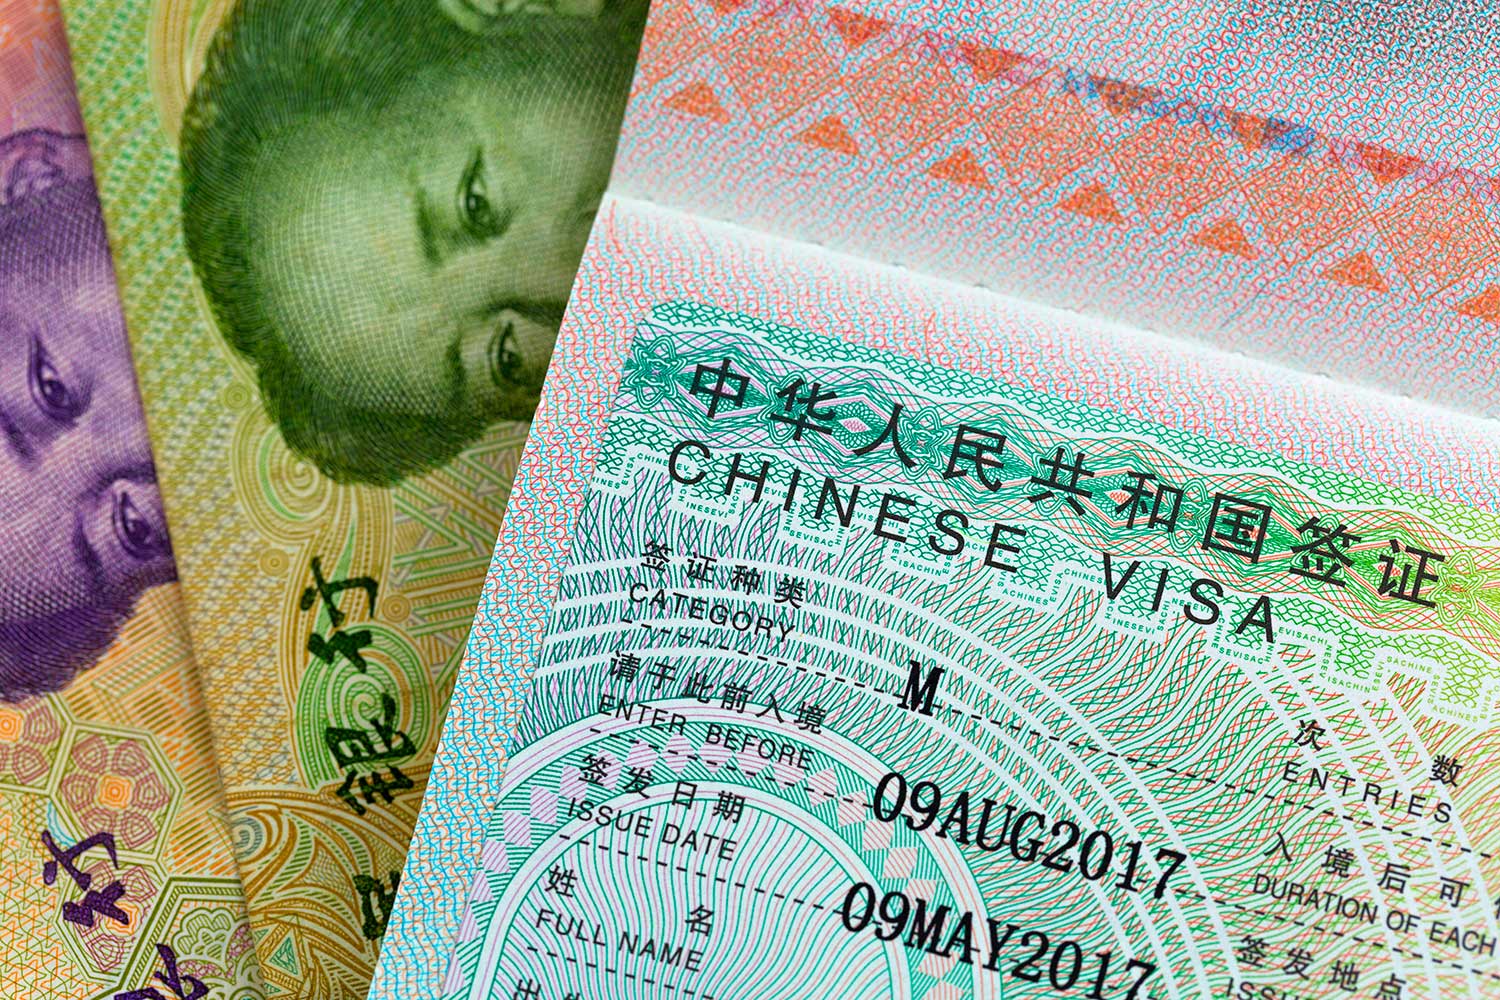 рабочая виза в китай